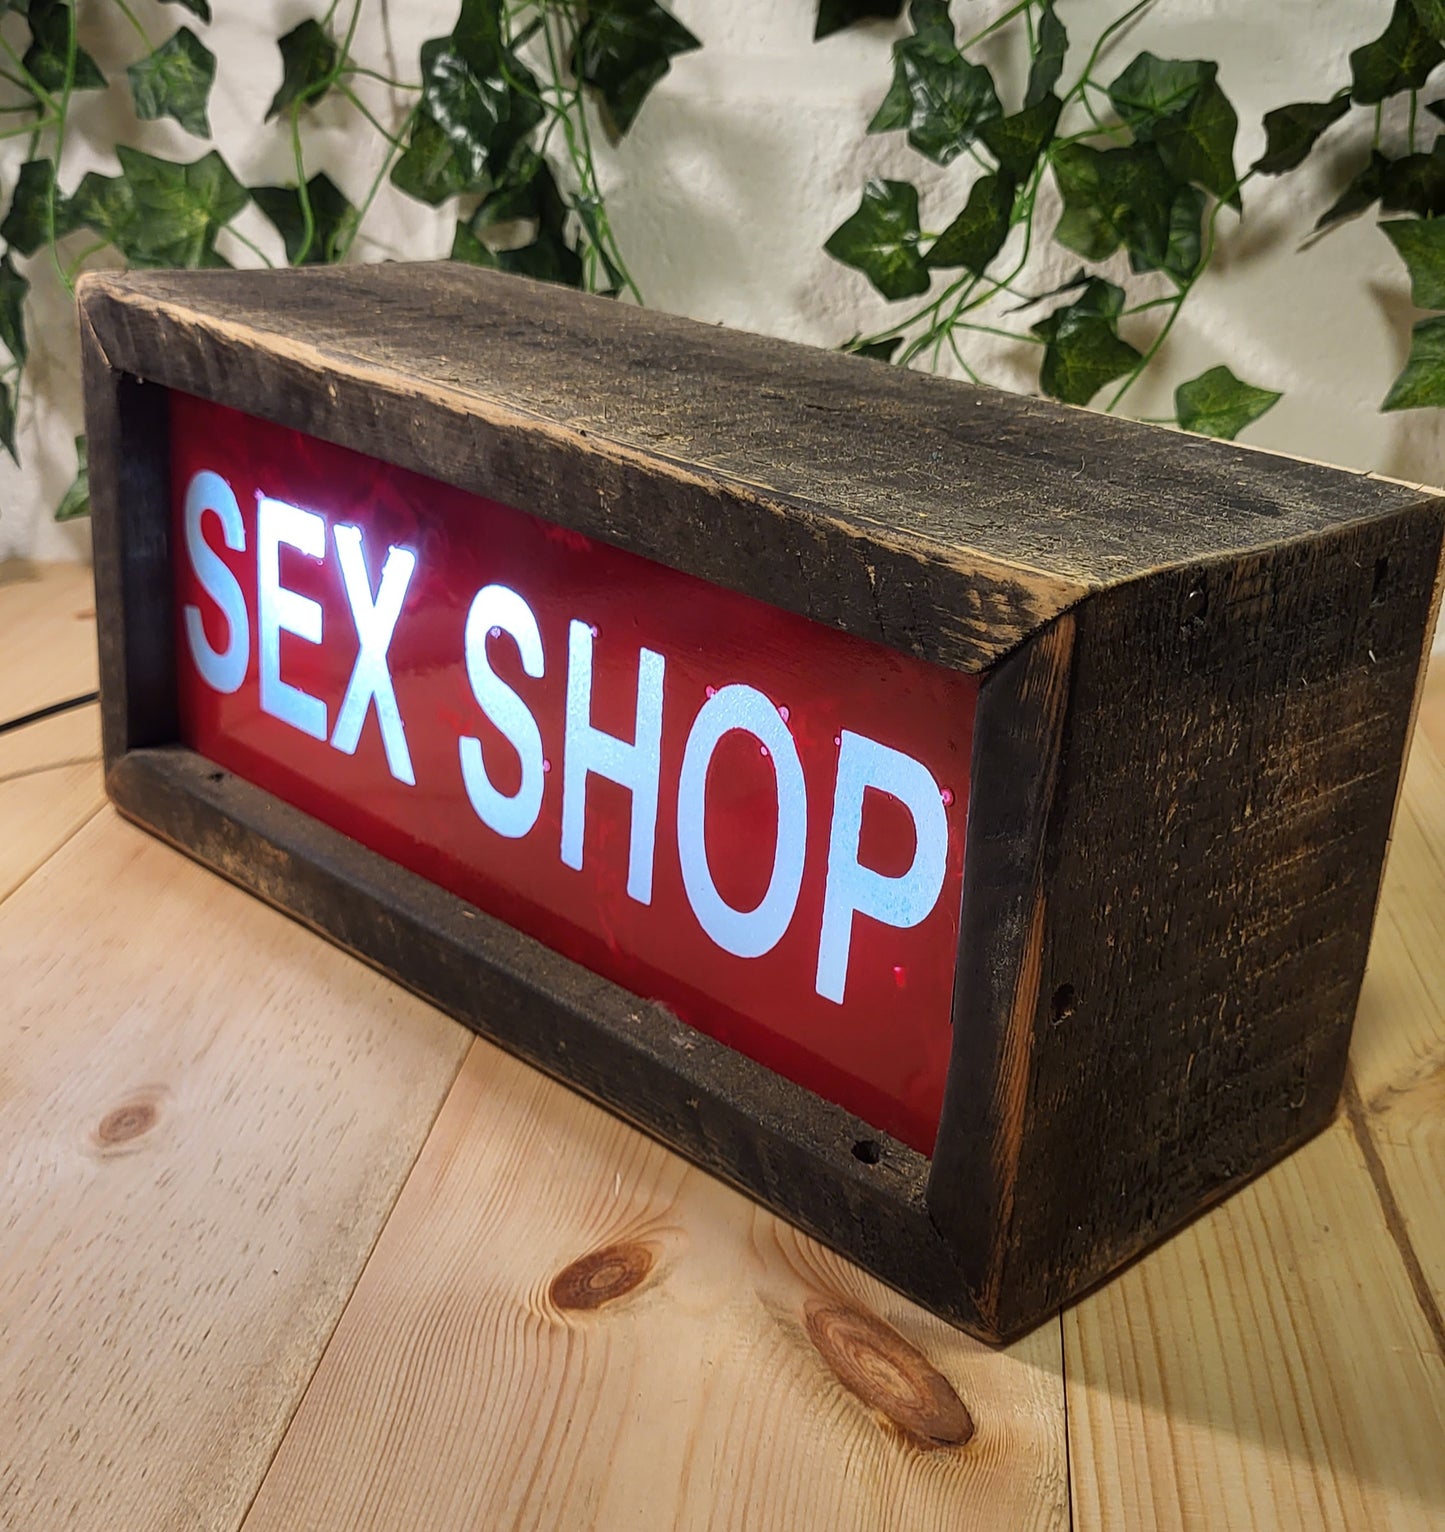 Sex Shop LED Light Box